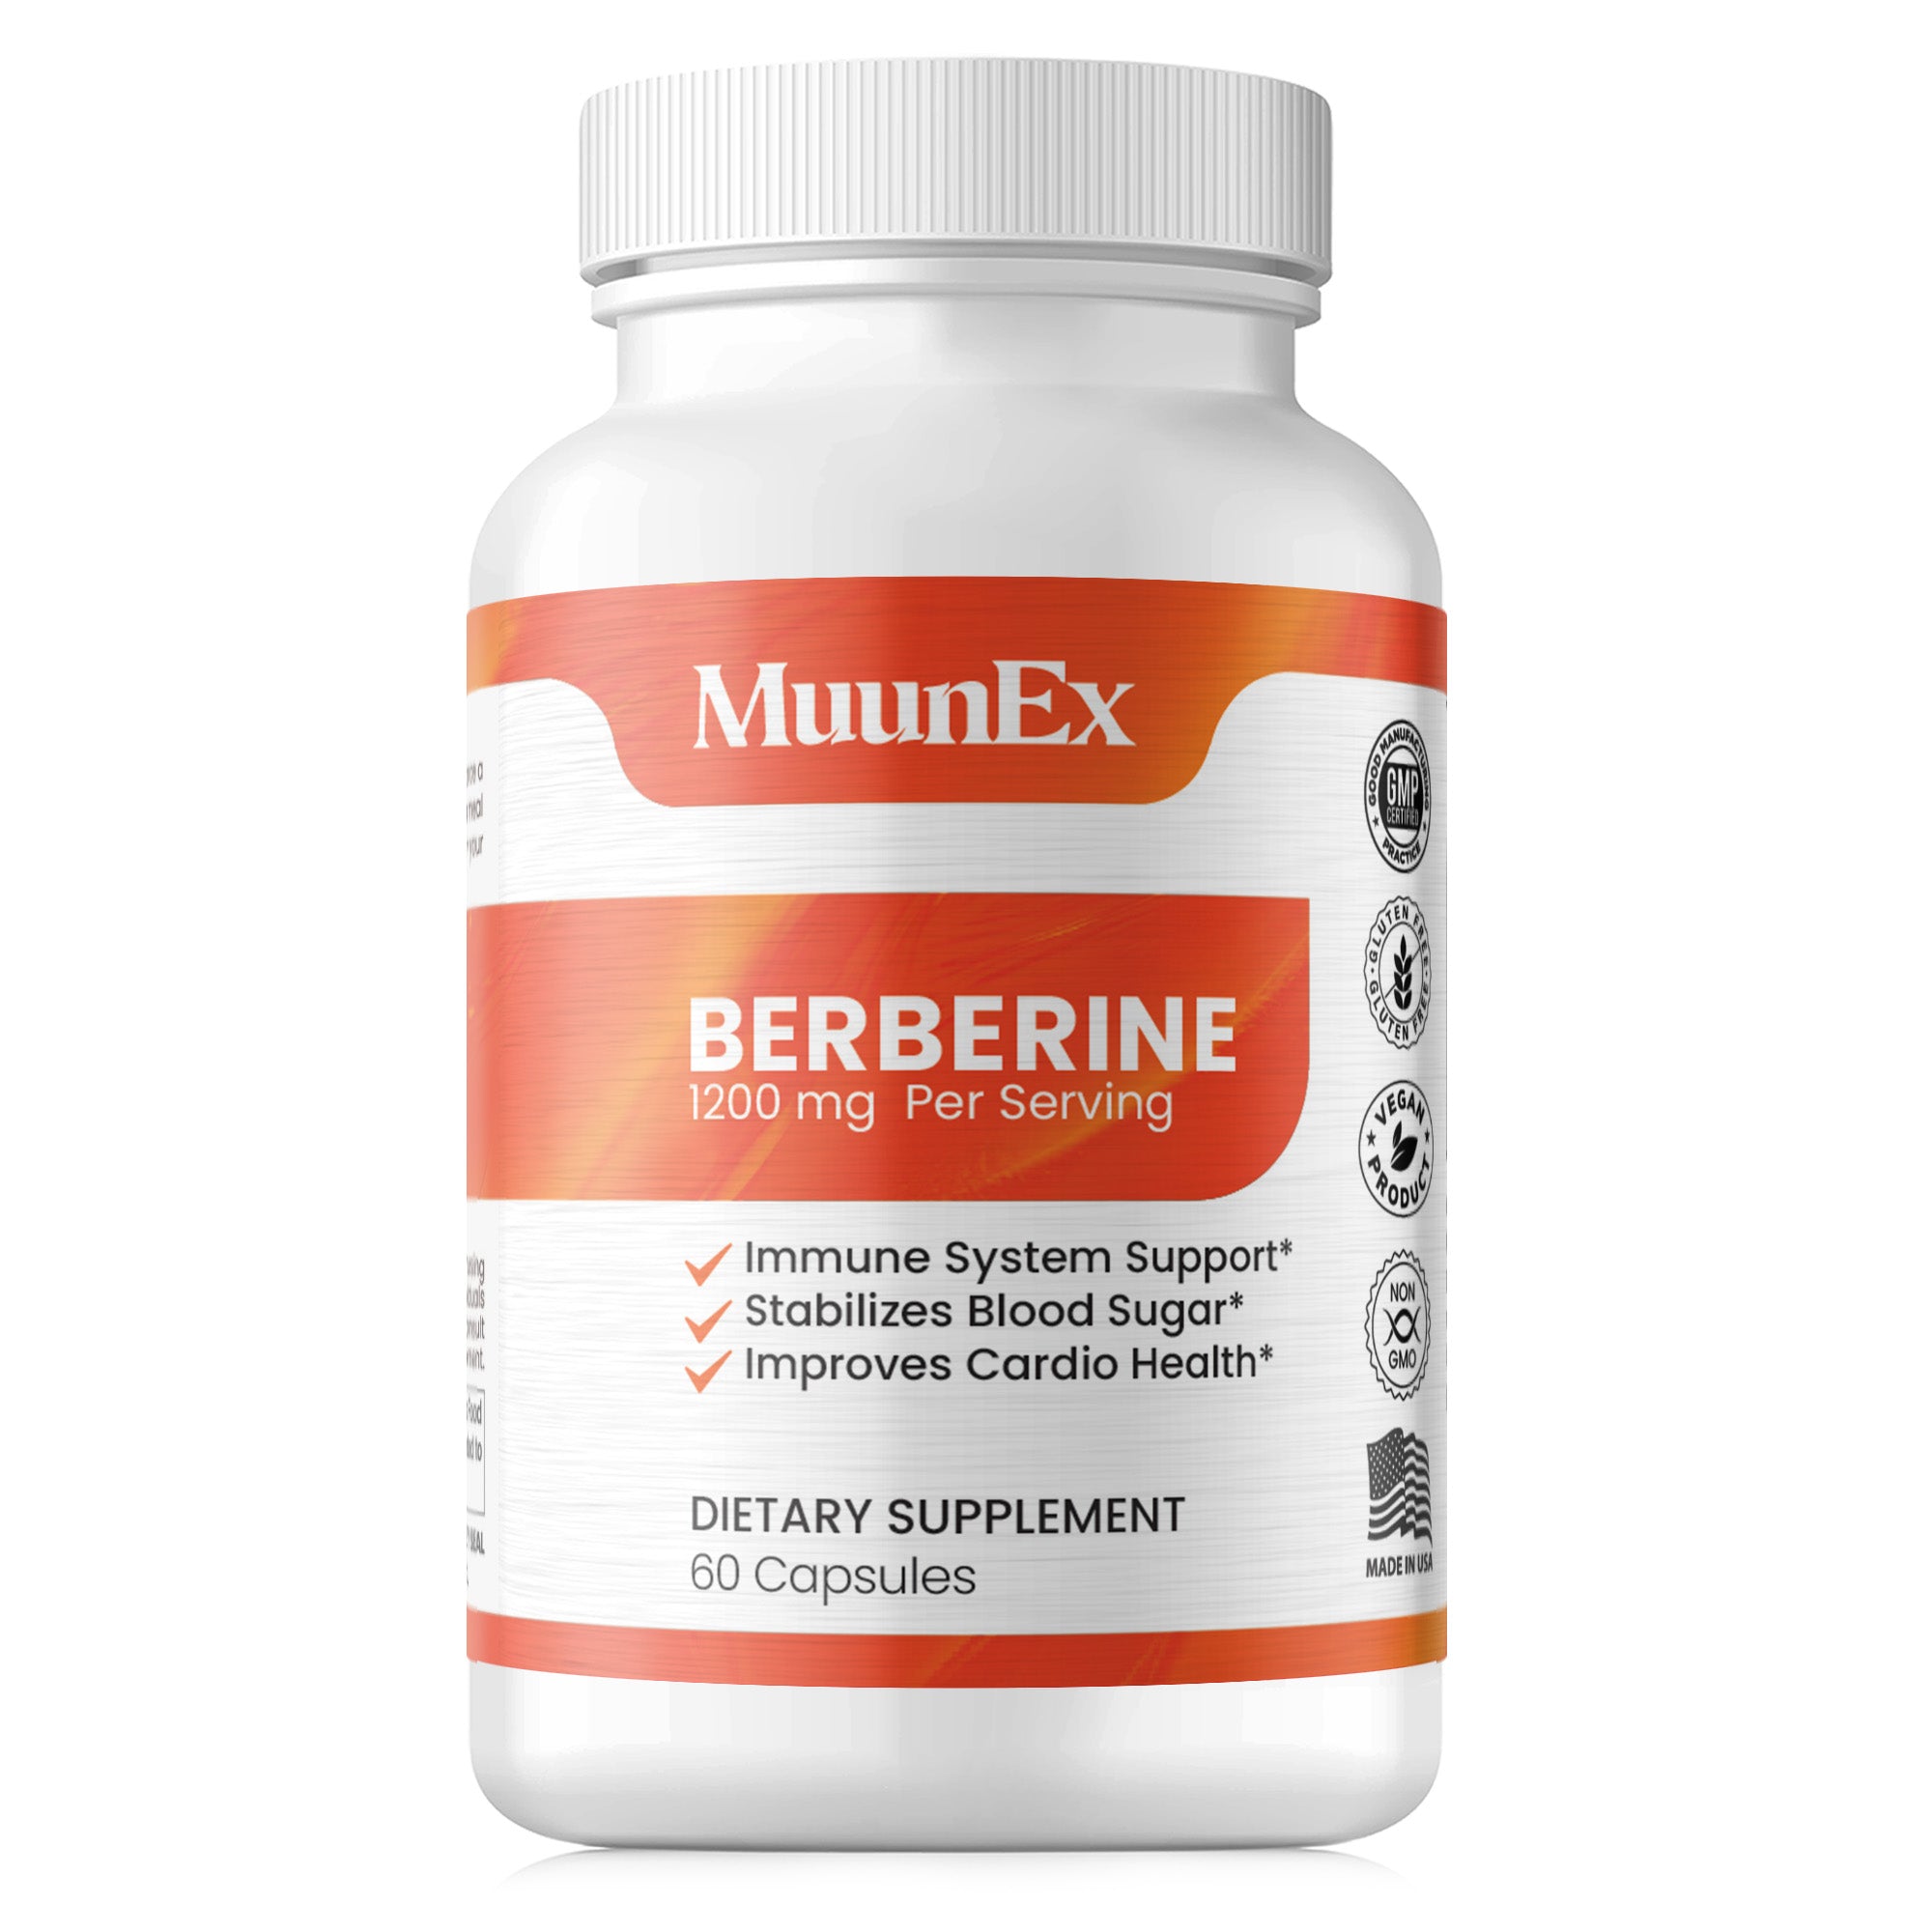 Muunex Berberine 1200mg - 60 Capsules